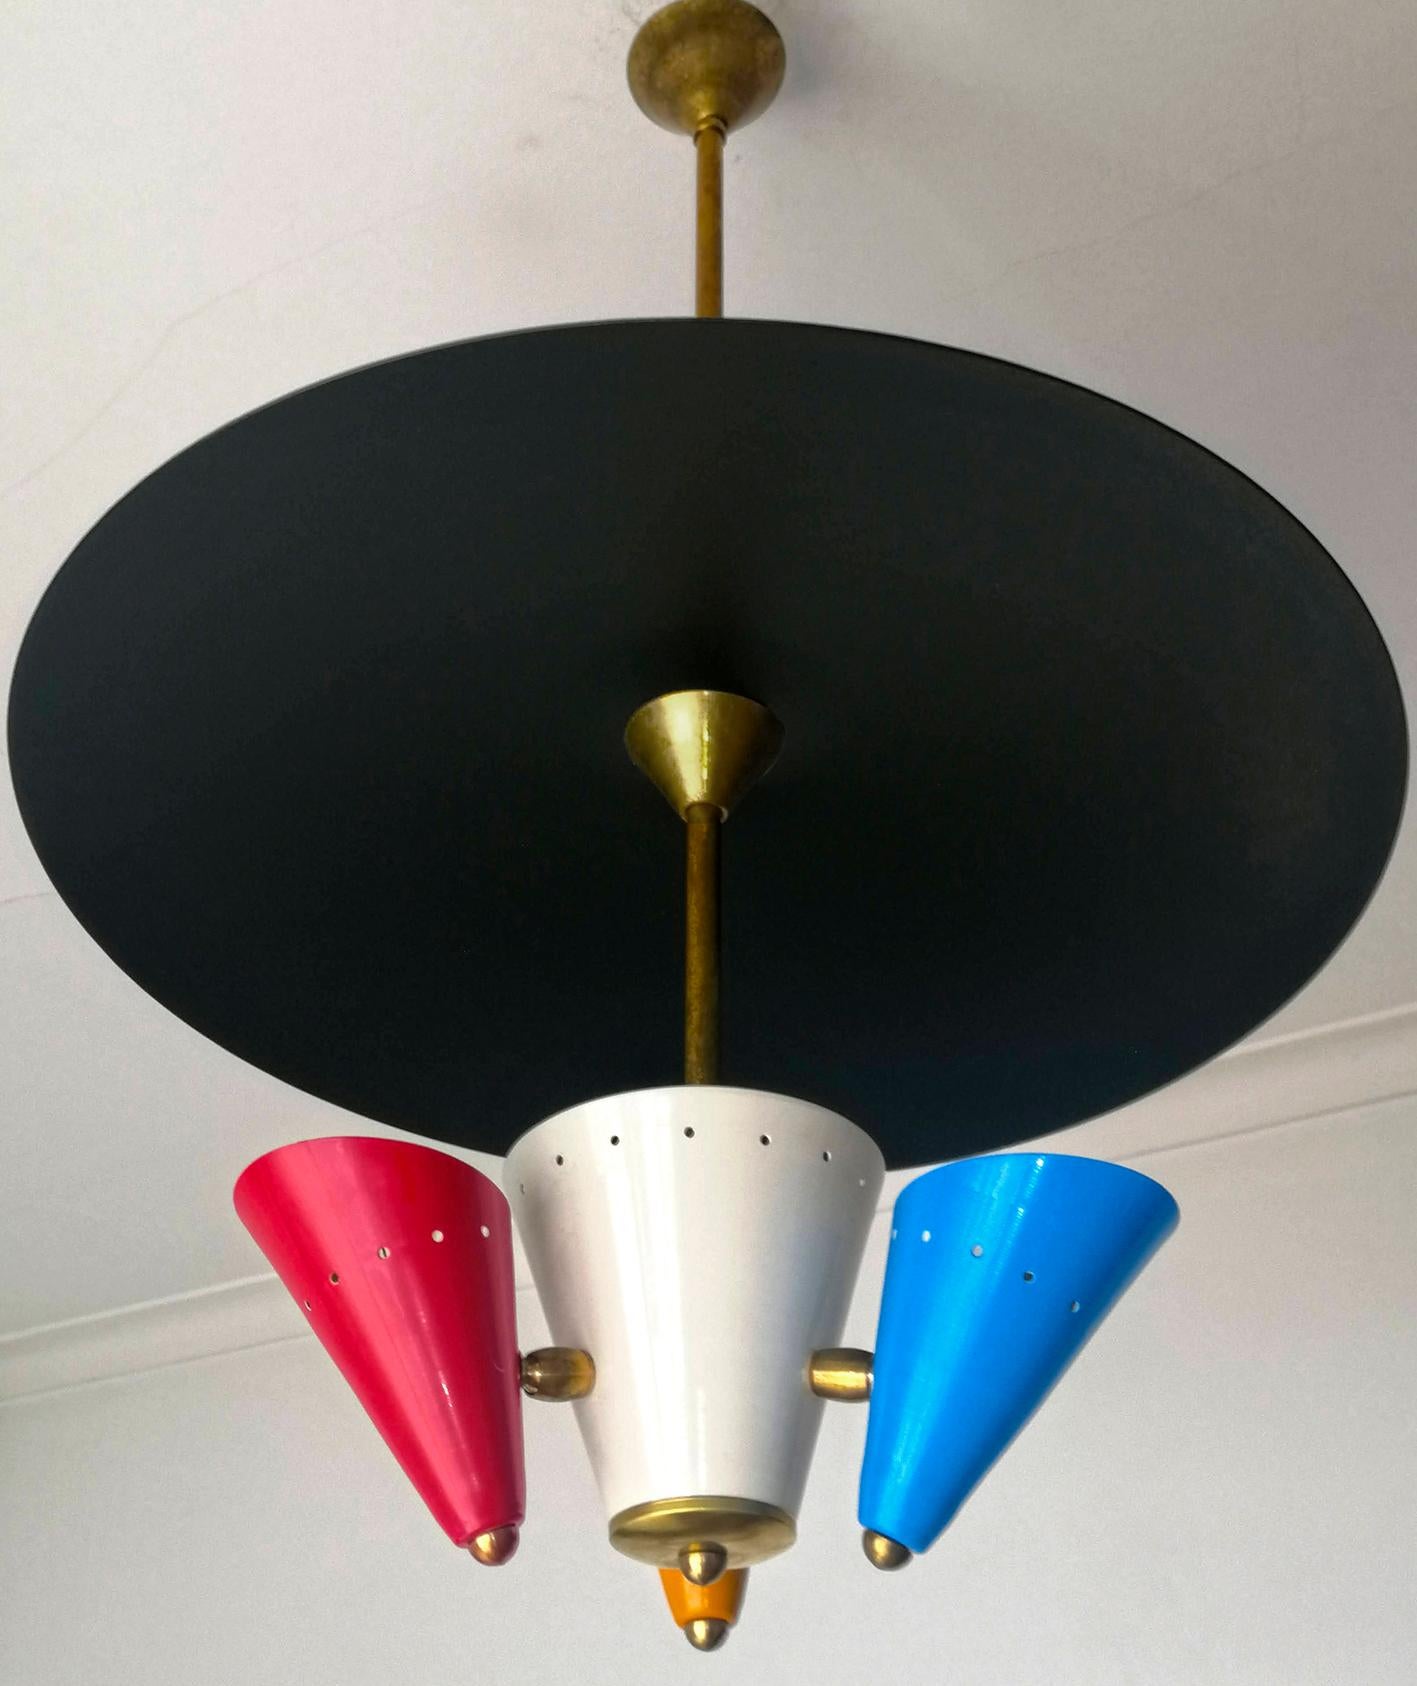 Gilt Stilnovo Modernist Flying Saucer Sputnik Chandelier in Black, Red, Blue & Yellow For Sale